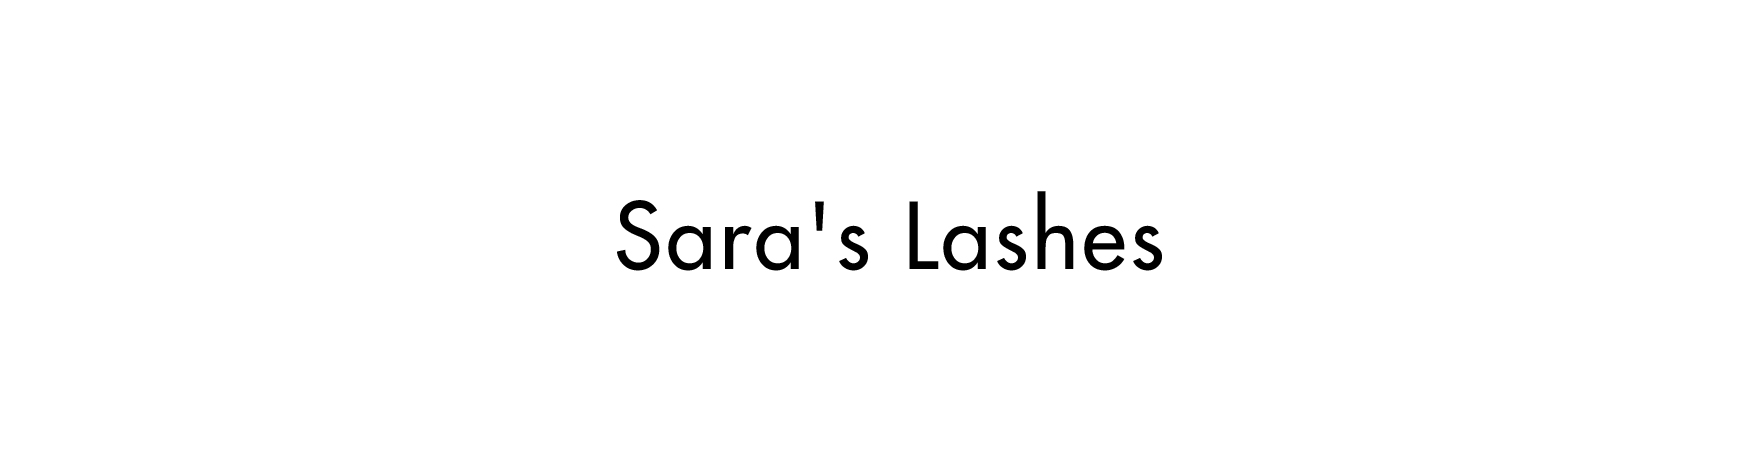 Sara's Lashes